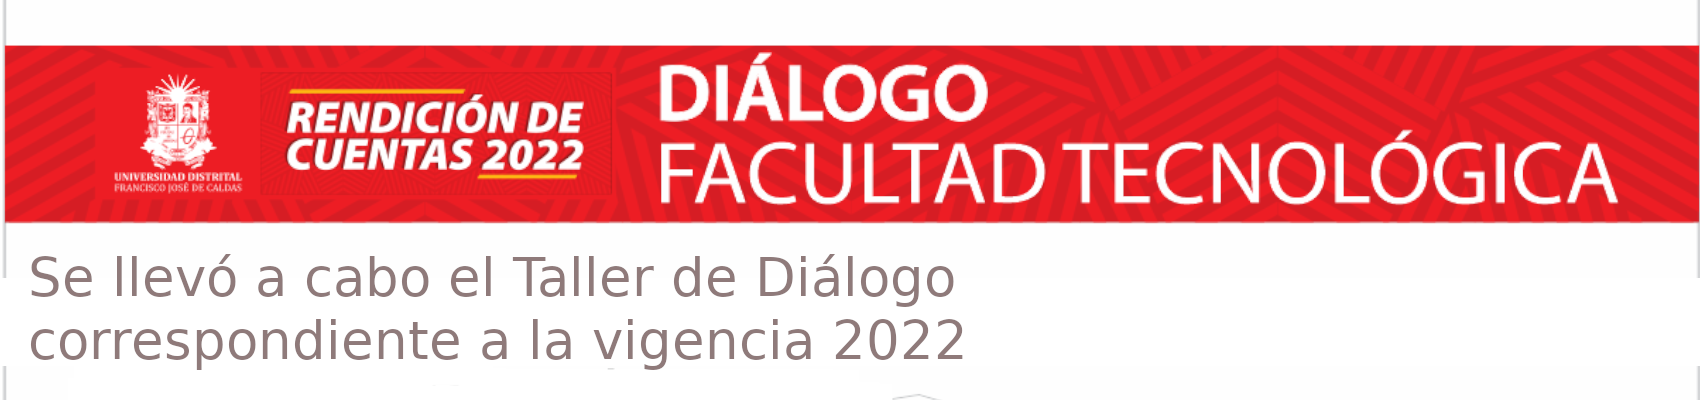 Rendición de cuentas 2022 - Taller de diálogo 